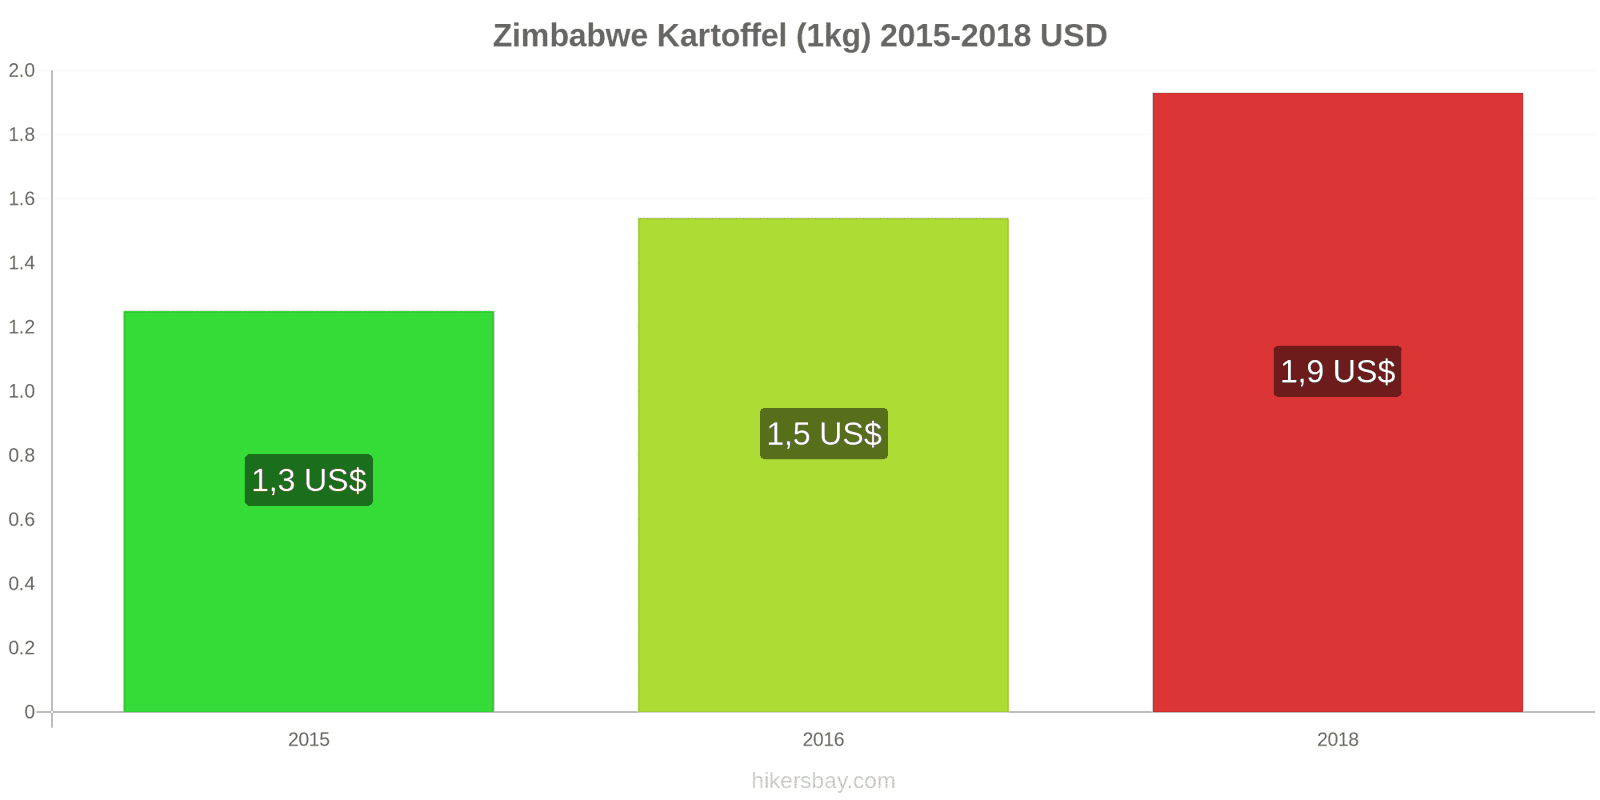 Zimbabwe prisændringer Kartoffel (1kg) hikersbay.com